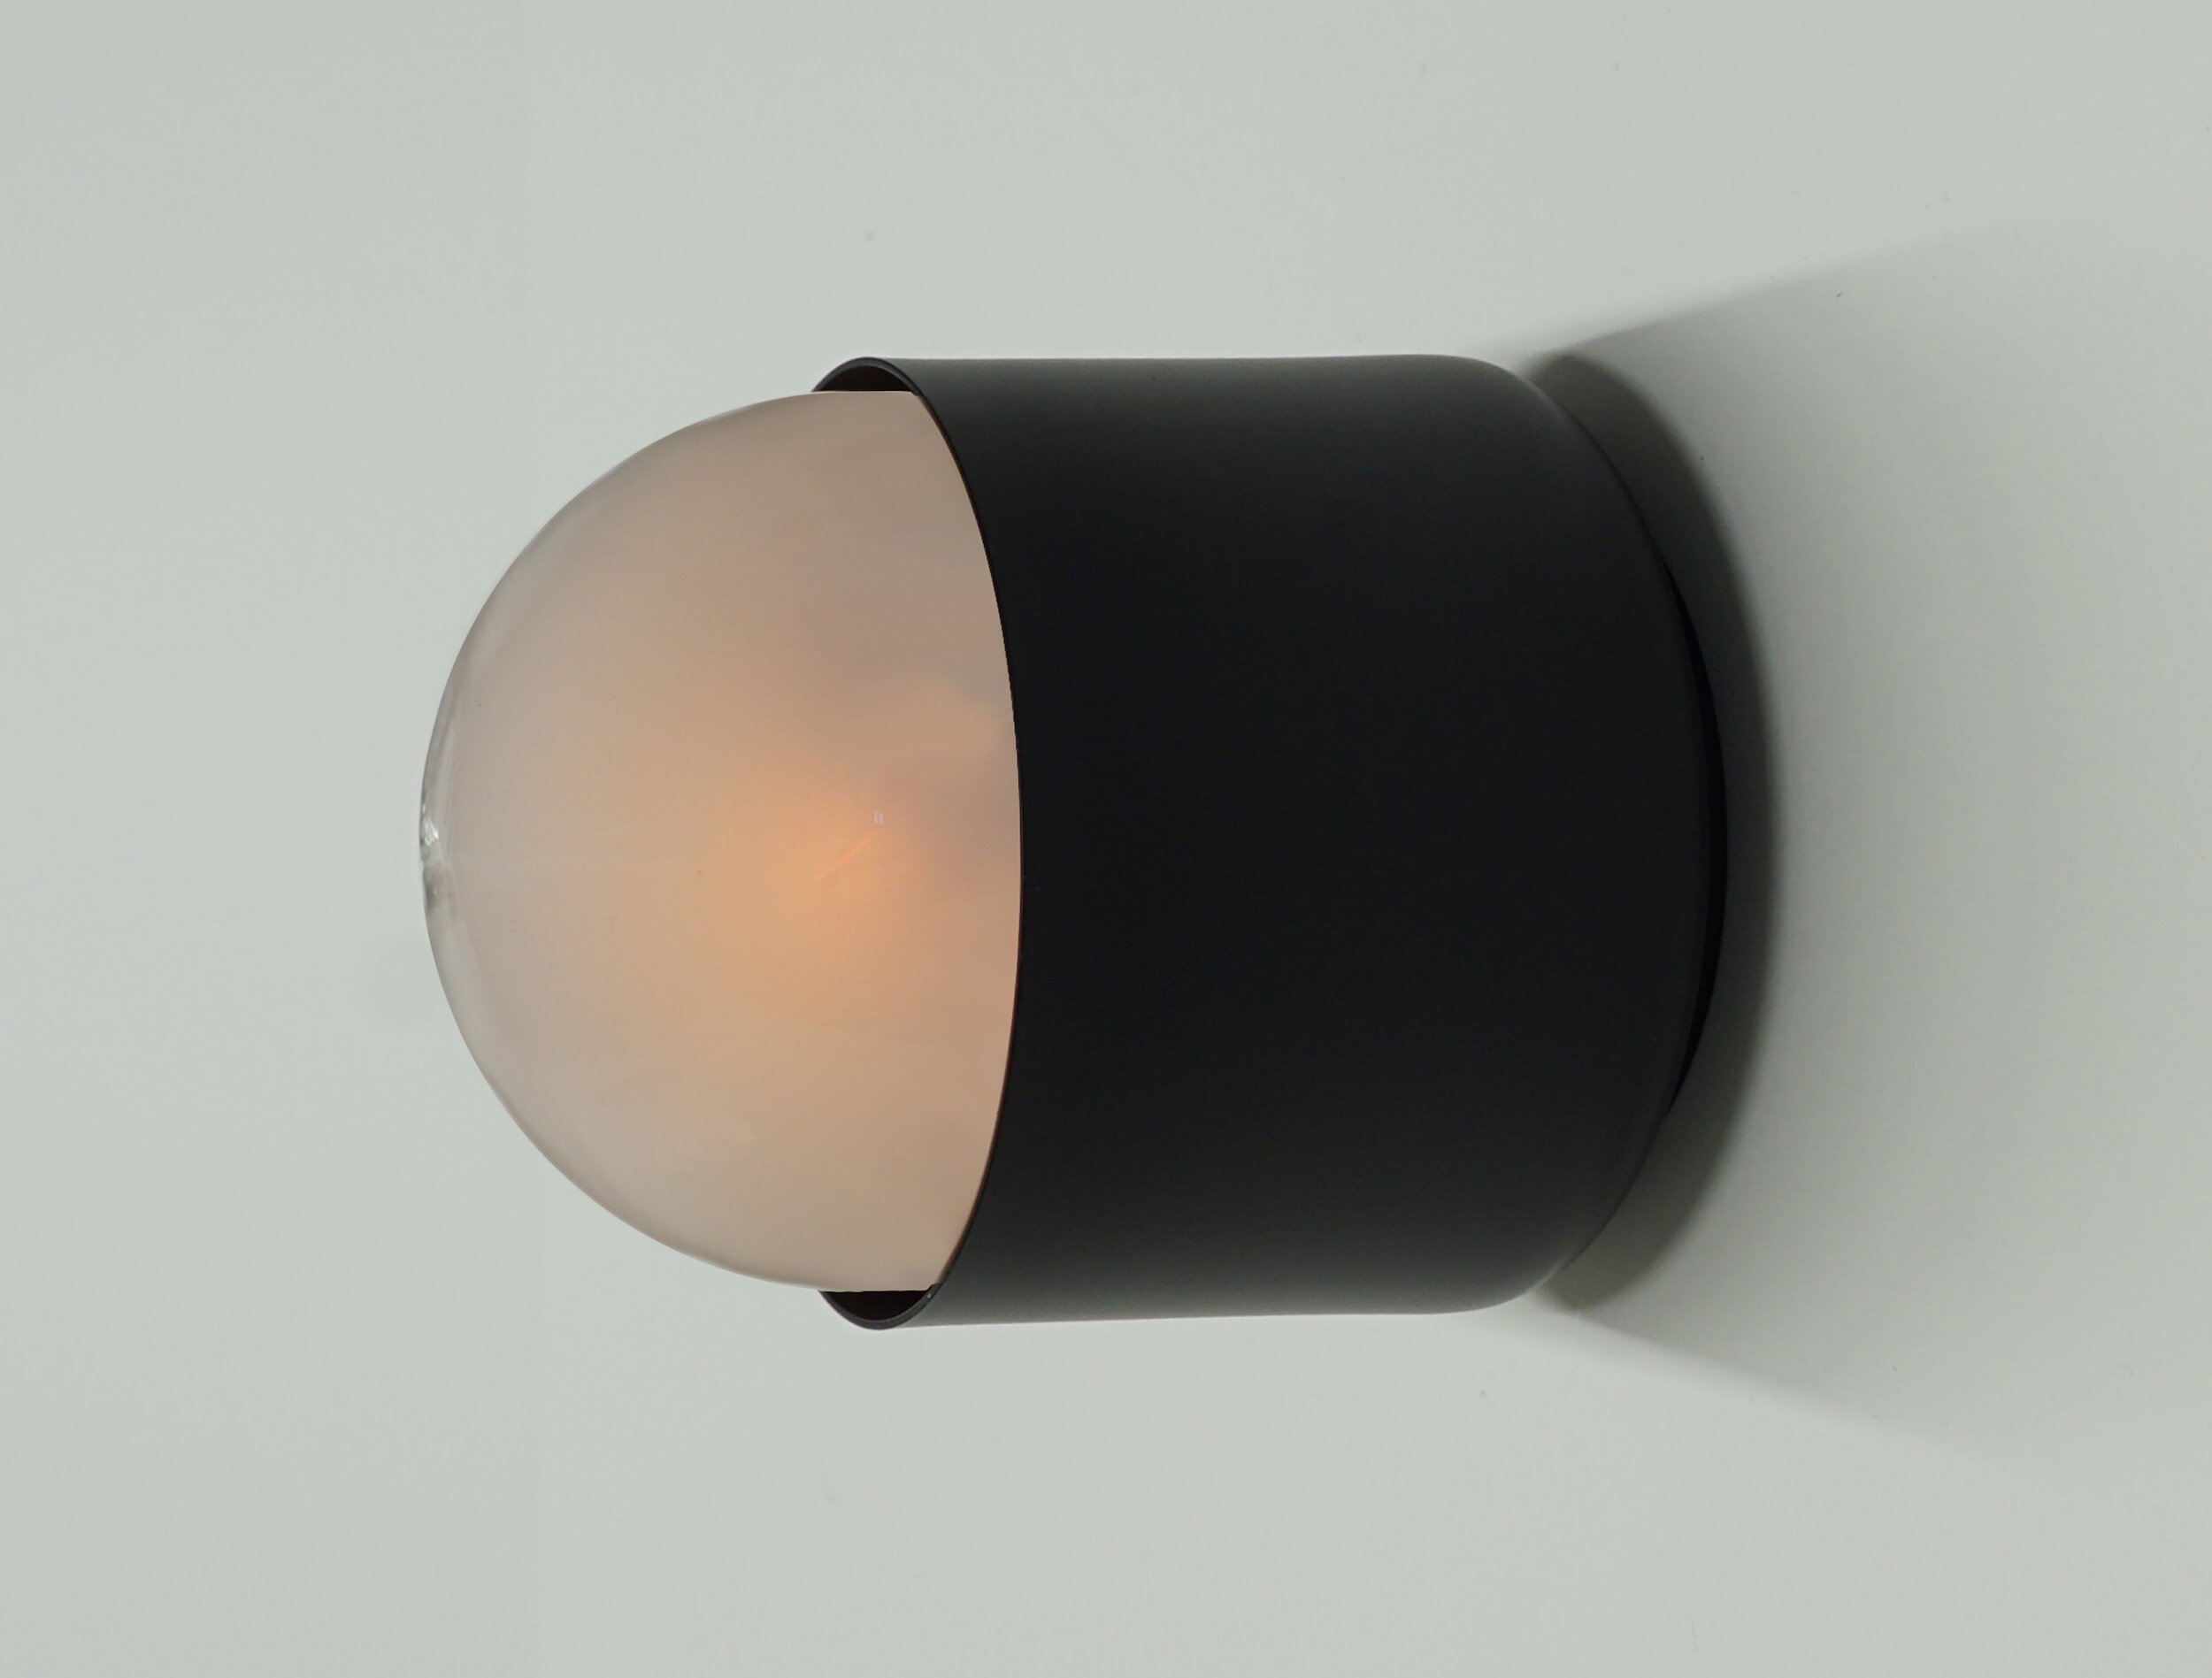  CASE-REAL（ケース・リアル）とKOICHI FUTATSUMATA STUDIOを主宰する二俣公一がデザインしたブラケットライト Untitled。開発協力はBRANCH LIGHTING DESIGNの中村達基、製作はライティング創が手掛けた。 